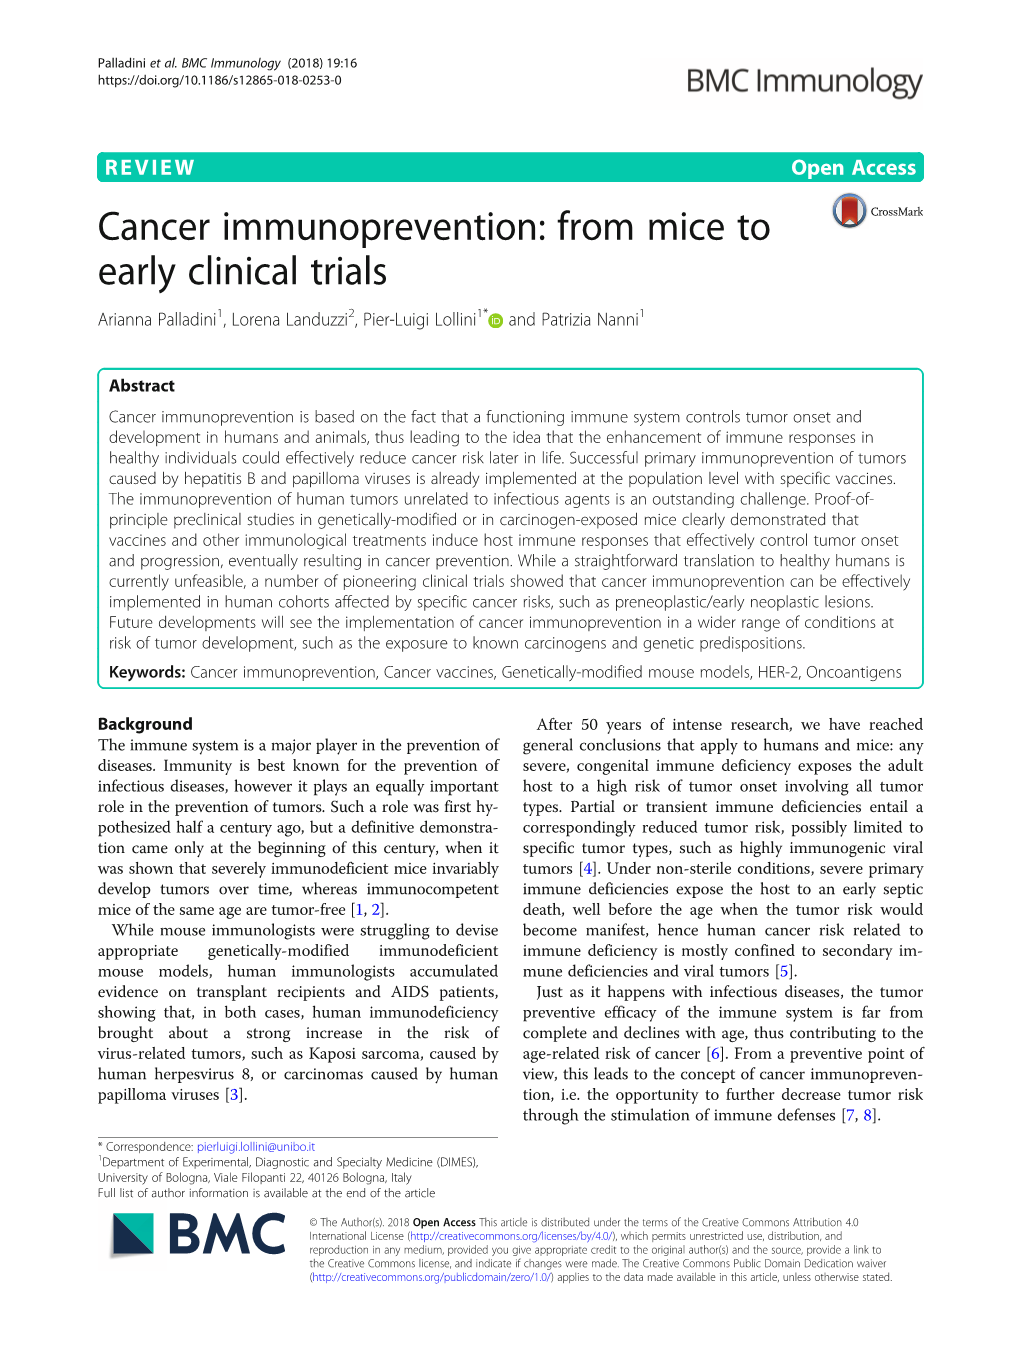 Cancer Immunoprevention: from Mice to Early Clinical Trials Arianna Palladini1, Lorena Landuzzi2, Pier-Luigi Lollini1* and Patrizia Nanni1